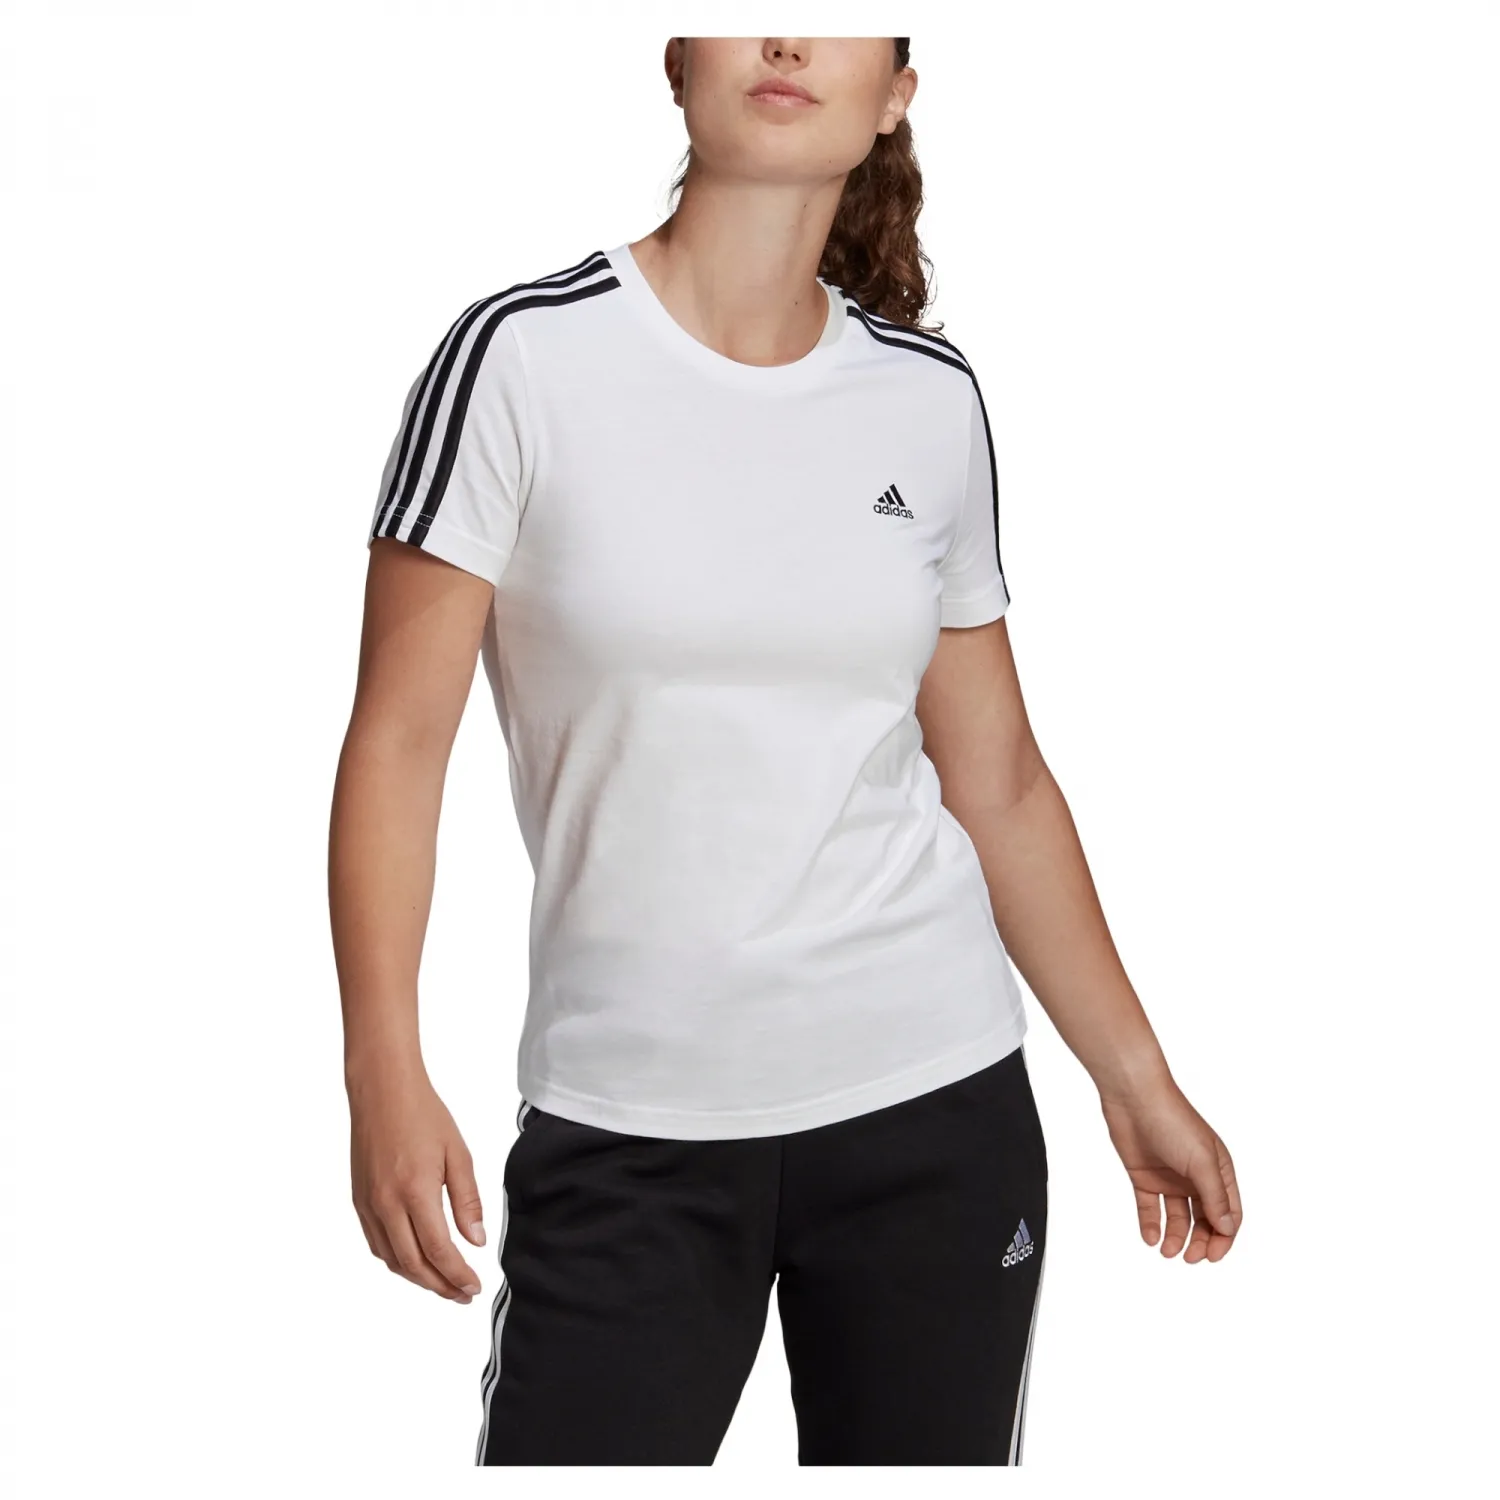 adidas LOUNGEWEAR ESSENTIALS SLIM 3-STREIFEN Damen T-Shirt weiß/schwarz - S